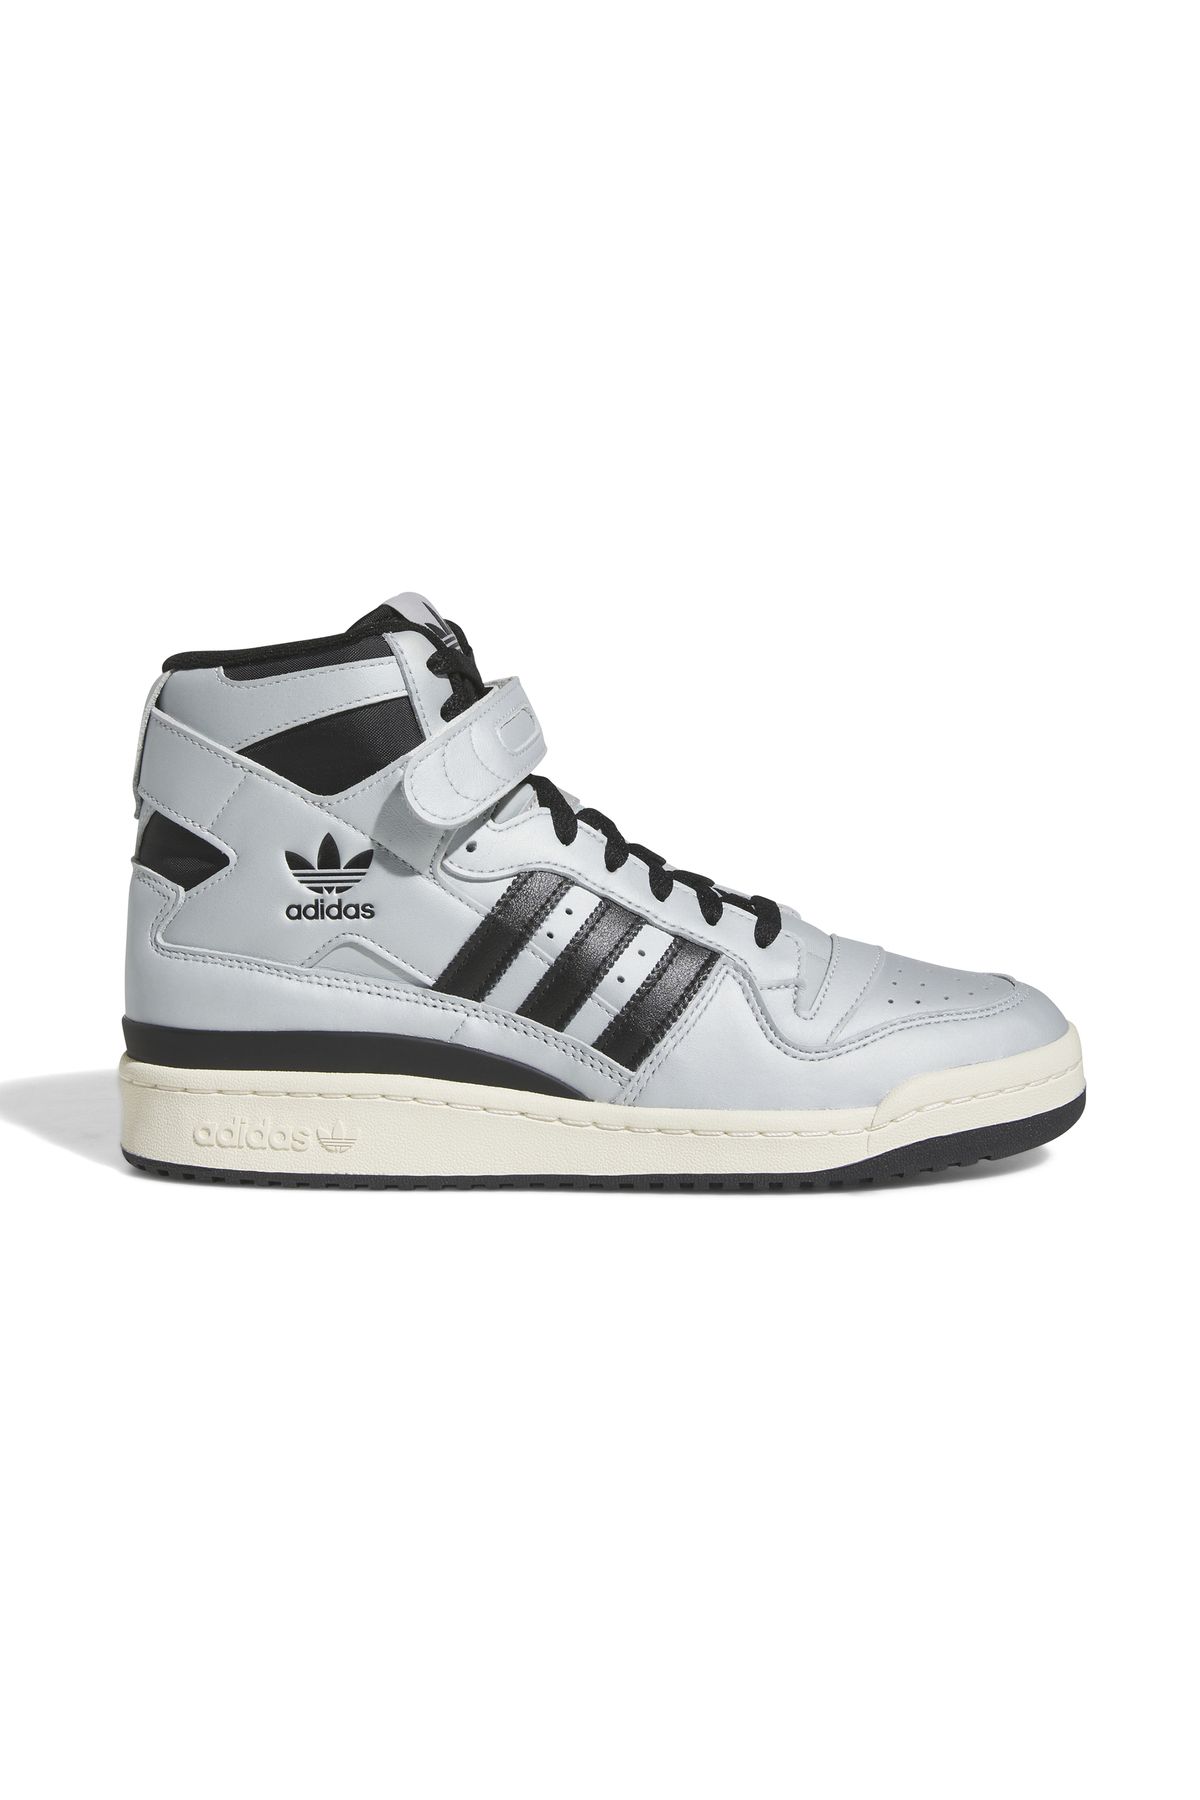 adidas Forum 84 Hi Günlük Spor Ayakkabı Sneaker Beyaz